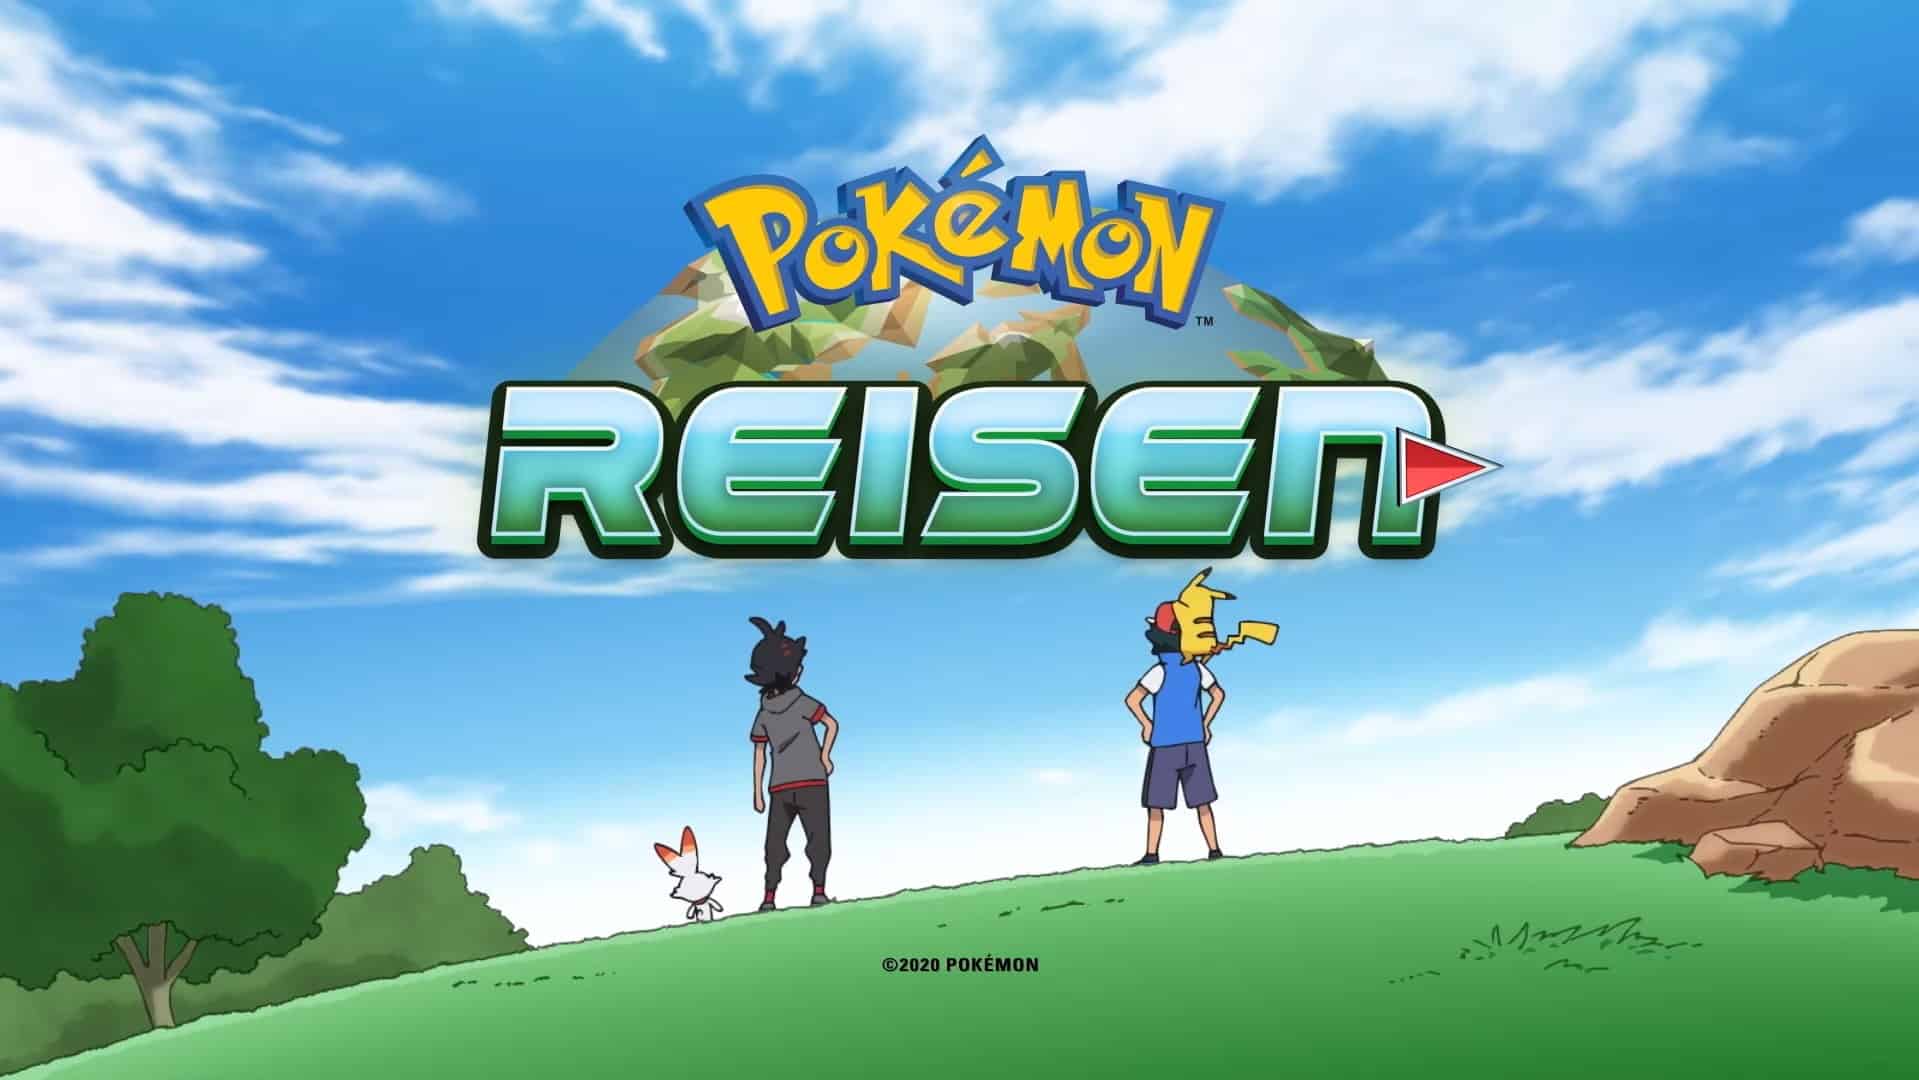 Pokémon season 23